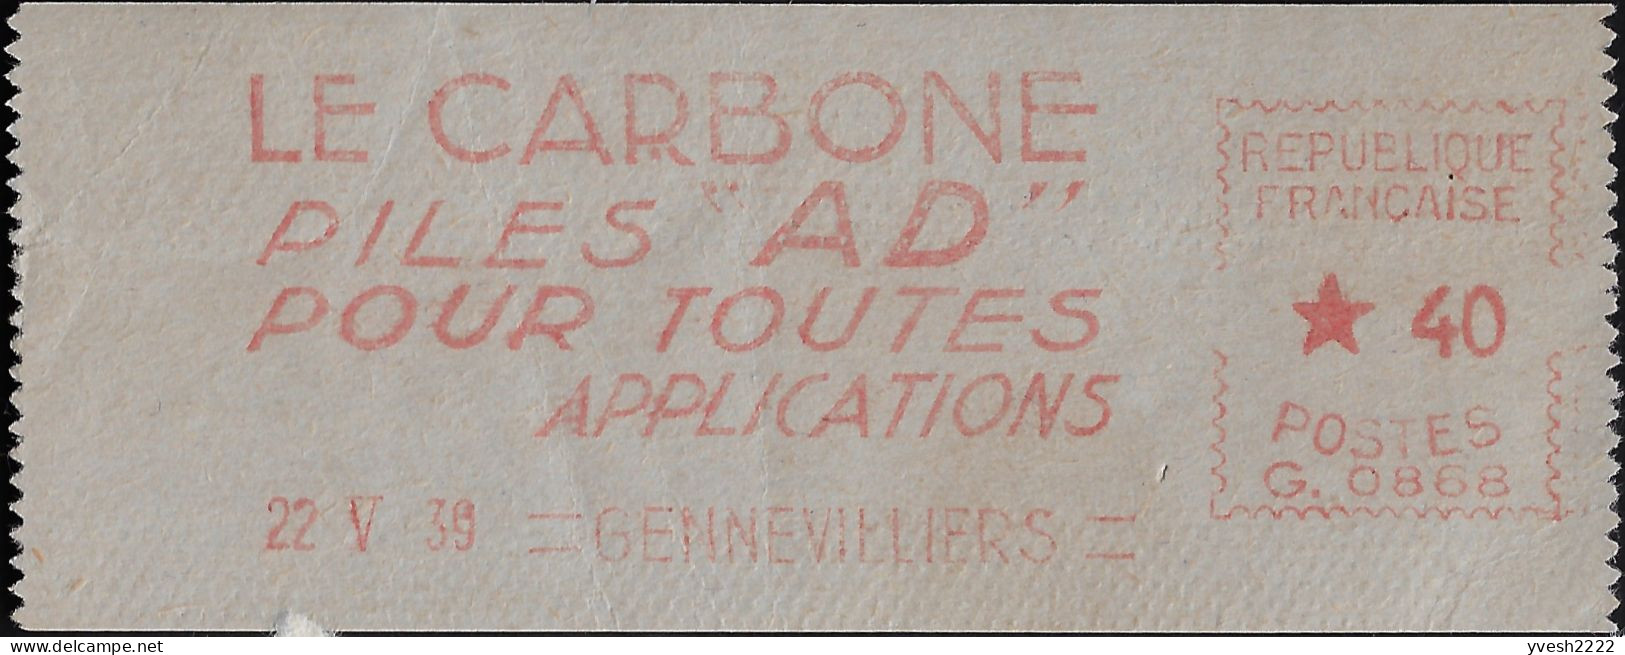 France 1939. Empreinte De Machine à Affranchir. Le Carbone, Piles AD Pour Toutes Applications - Electricidad